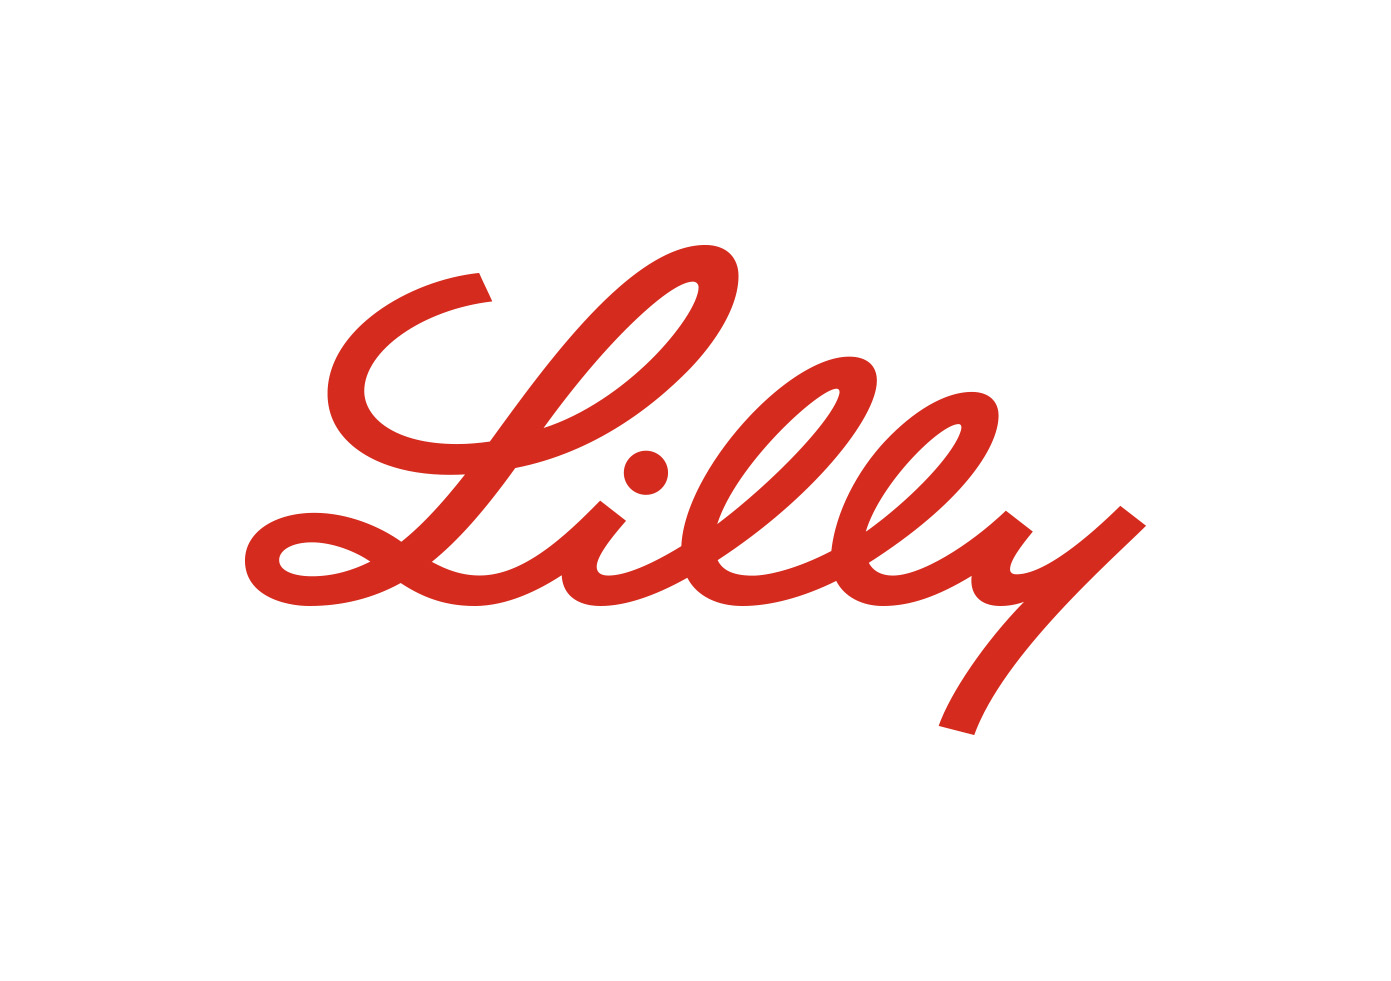 investor.lilly.com image